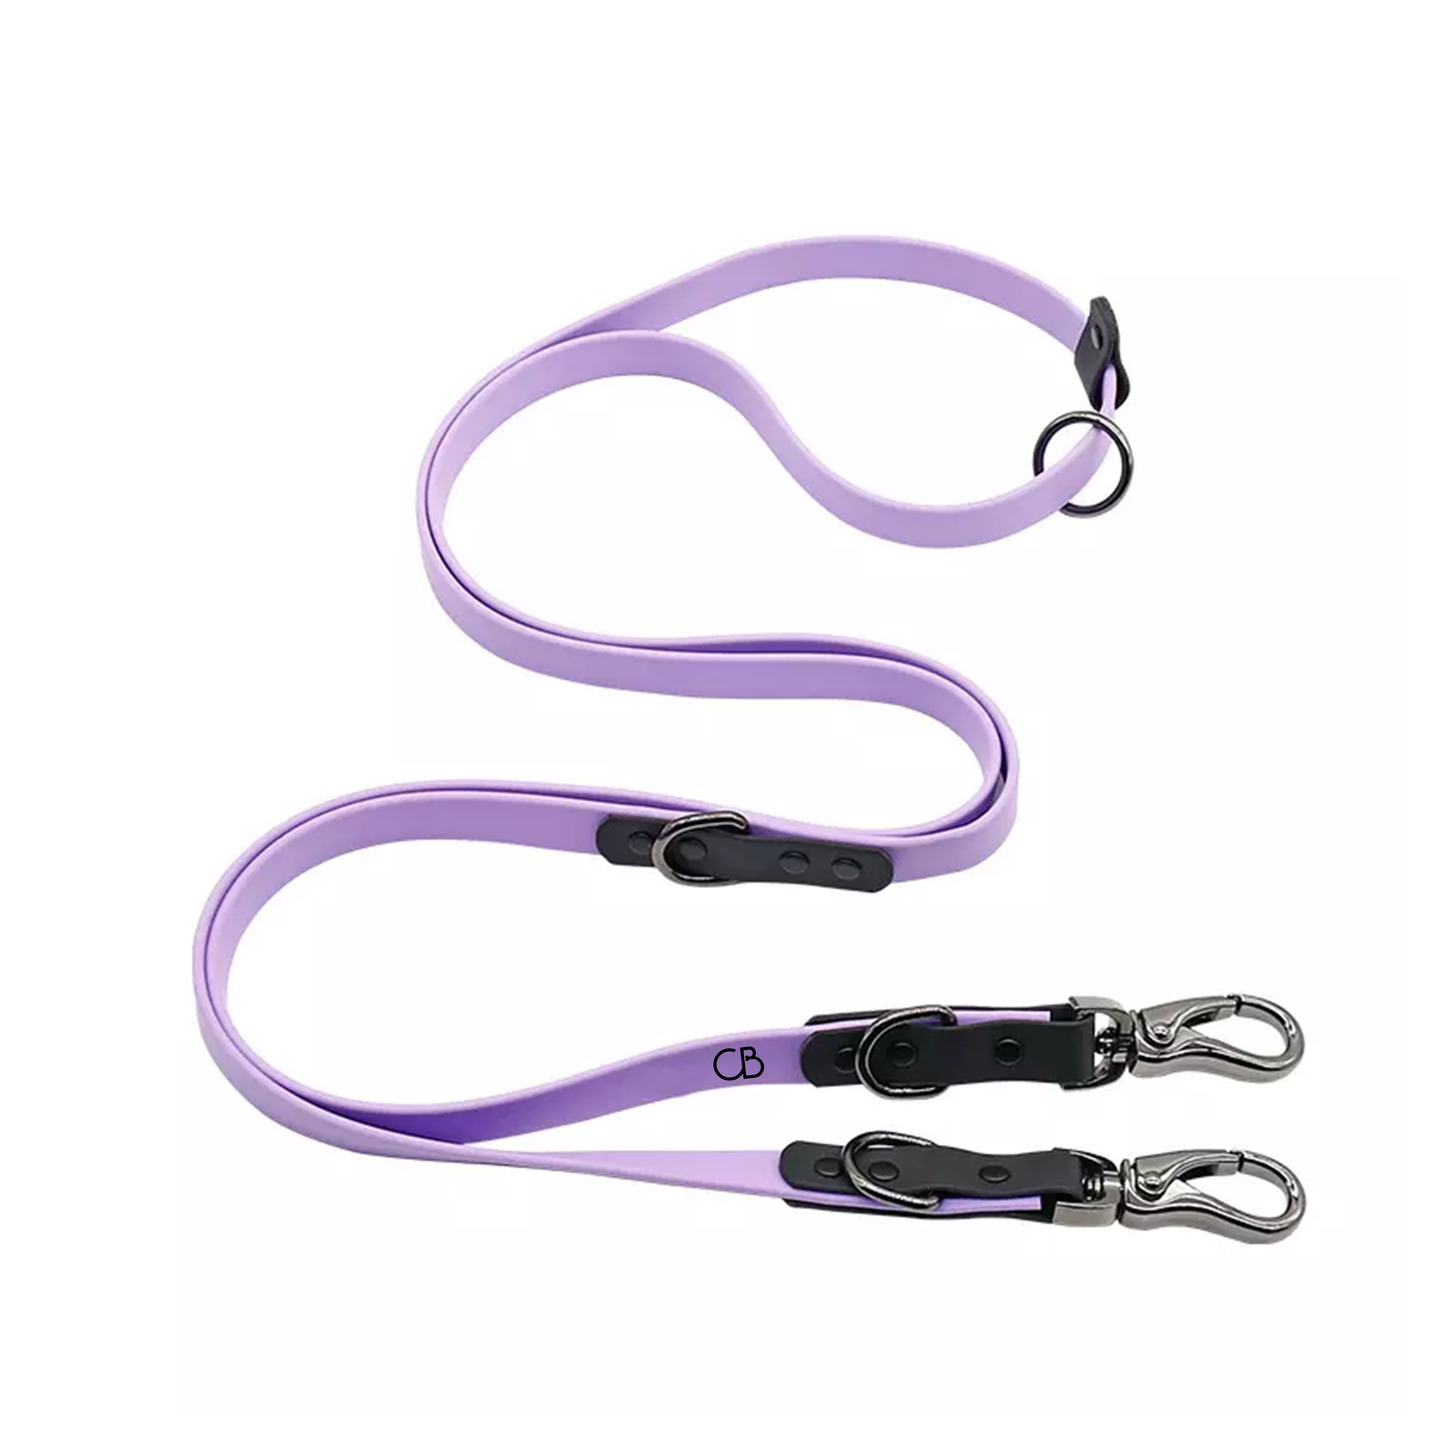 Stark Waterproof Multi-Function Dog Leash in Purple